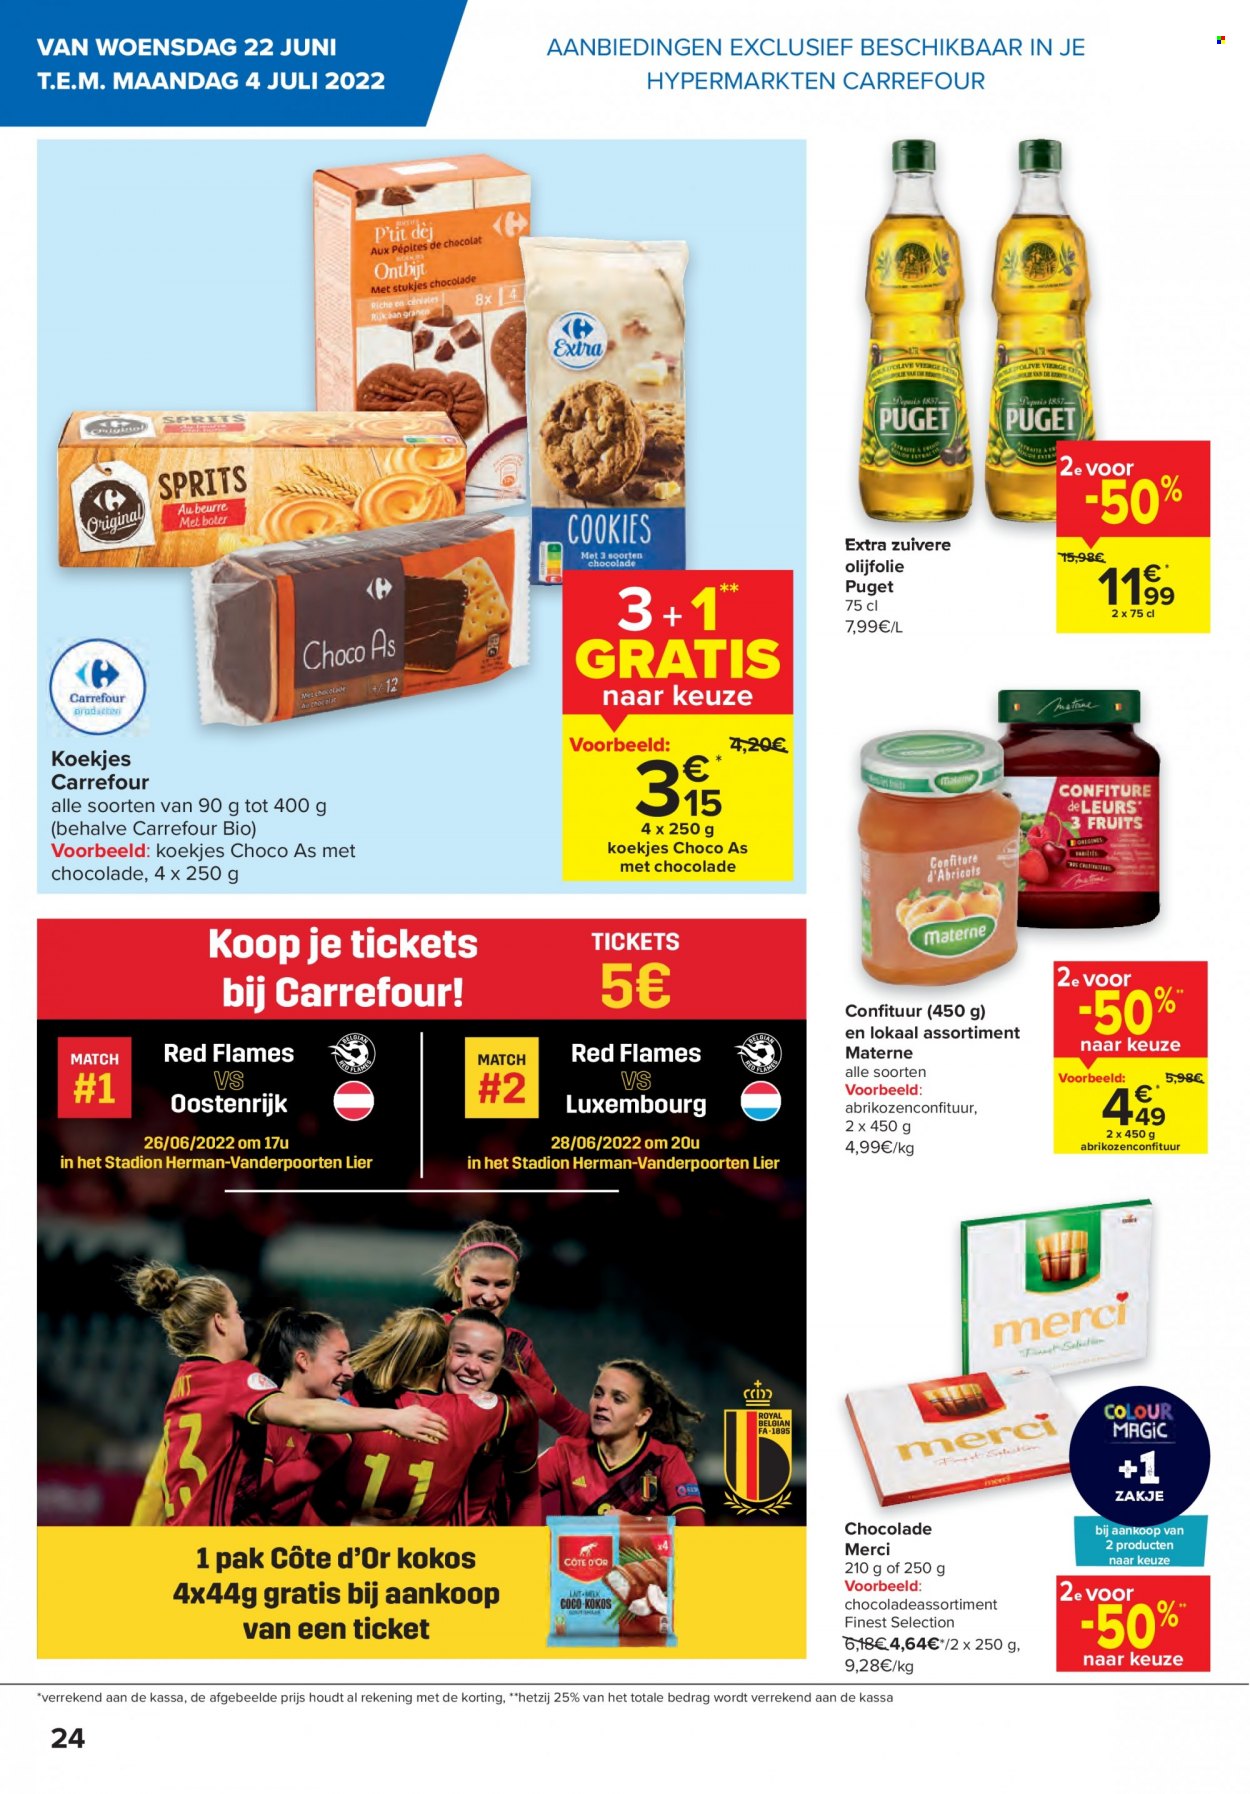 thumbnail - Catalogue Carrefour hypermarkt - 22/06/2022 - 04/07/2022 - Produits soldés - Côte d'Or. Page 24.